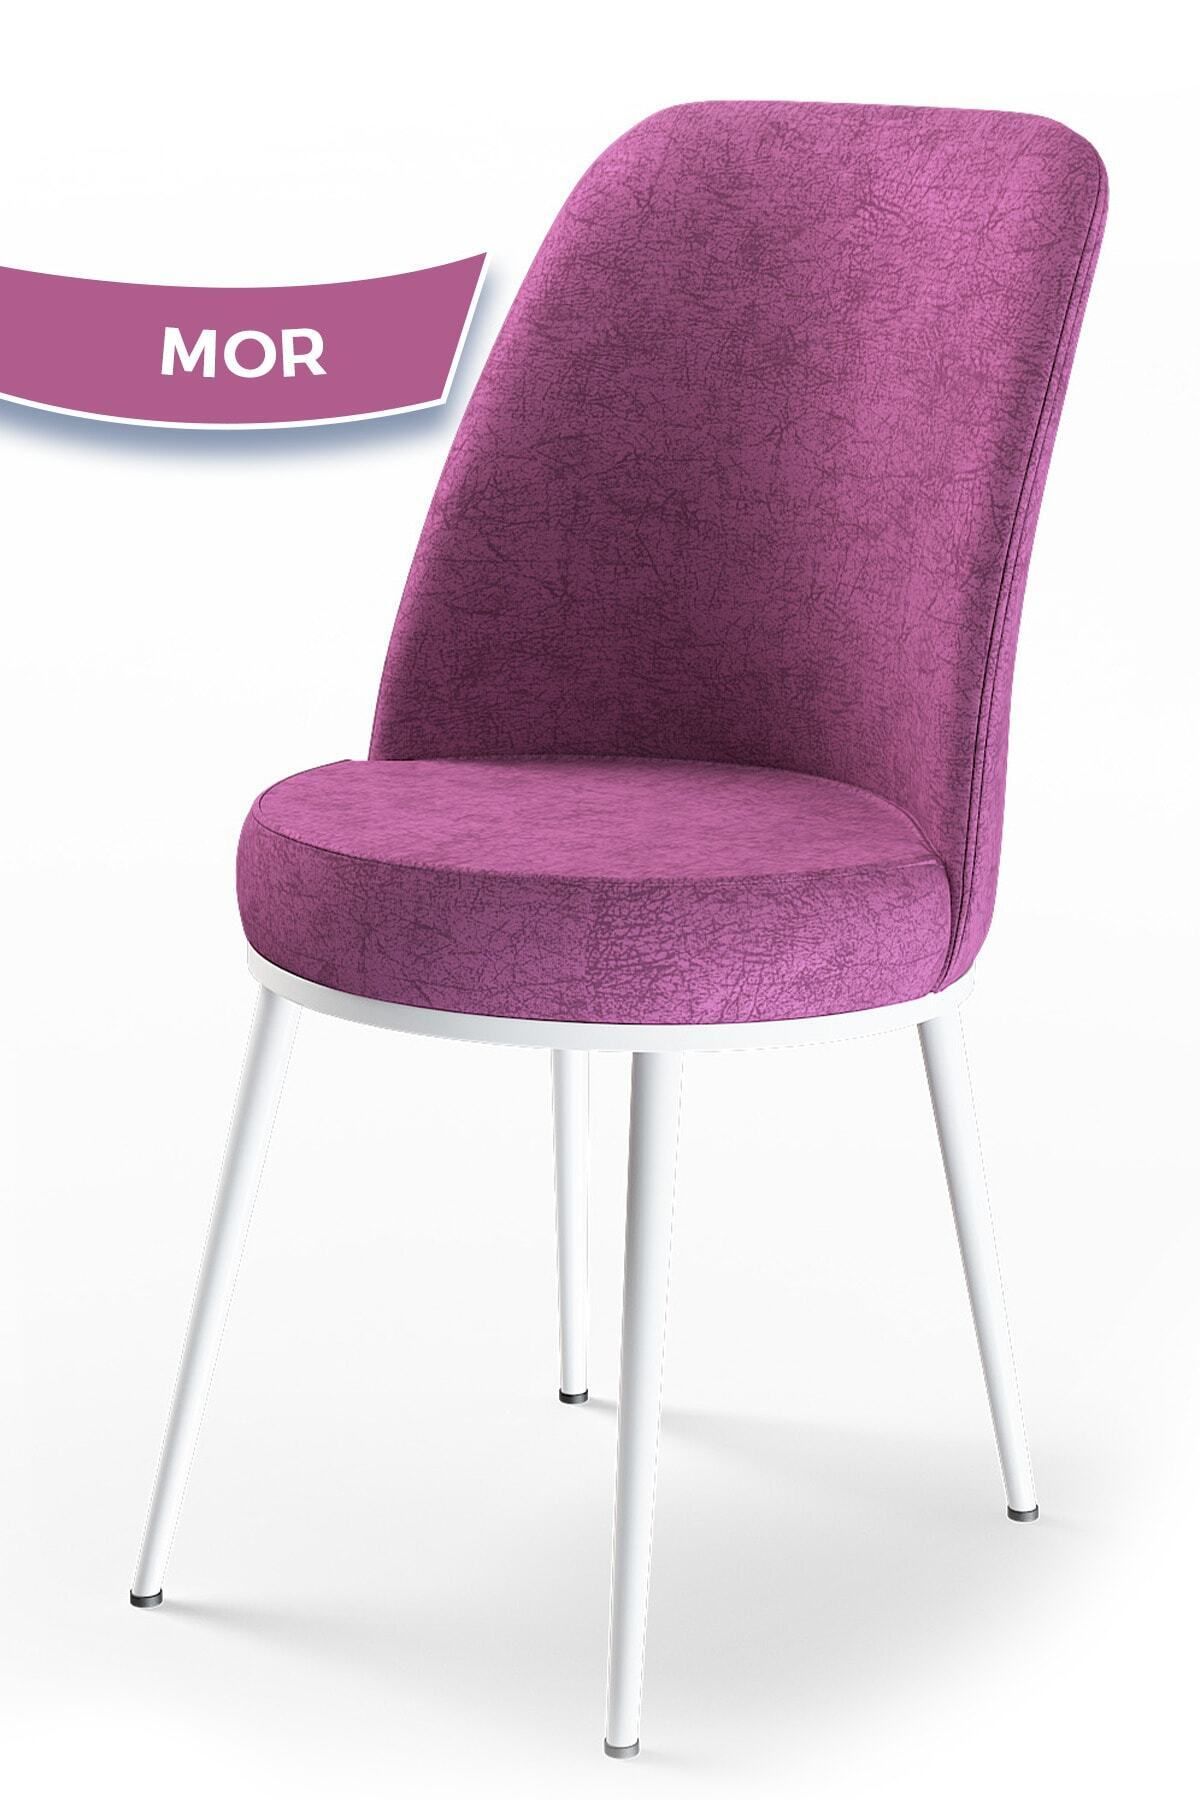 Canisa Concept Dexa Serisi Mor Renk Sandalye Mutfak Sandalyesi, Yemek Sandalyesi Ayaklar Beyaz